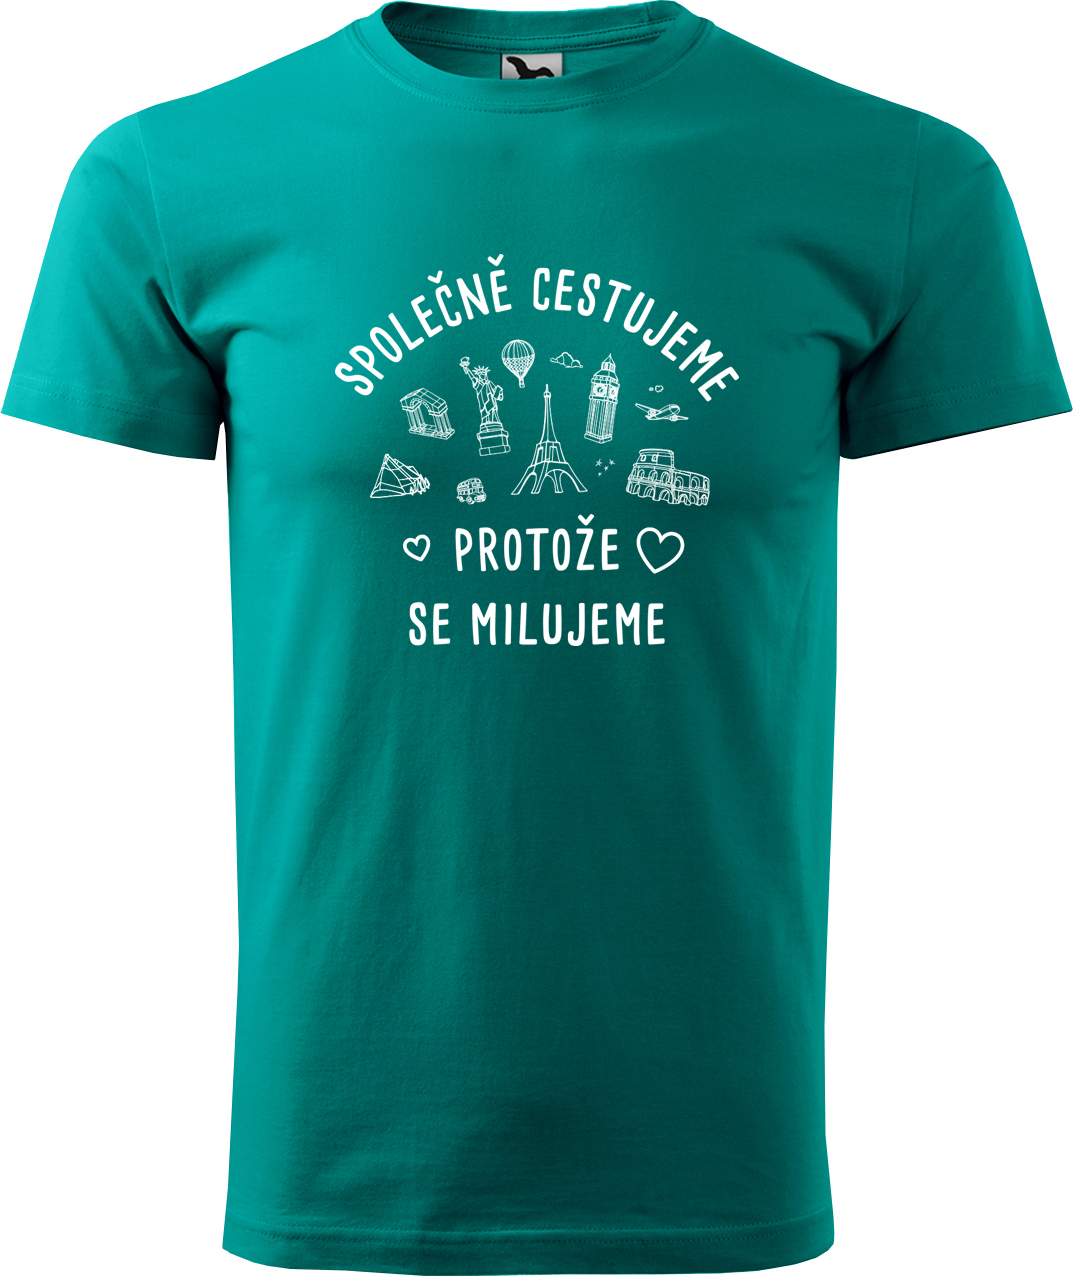 Pánské cestovatelské tričko - Společně cestujeme protože se milujeme Velikost: 3XL, Barva: Emerald (19), Střih: pánský